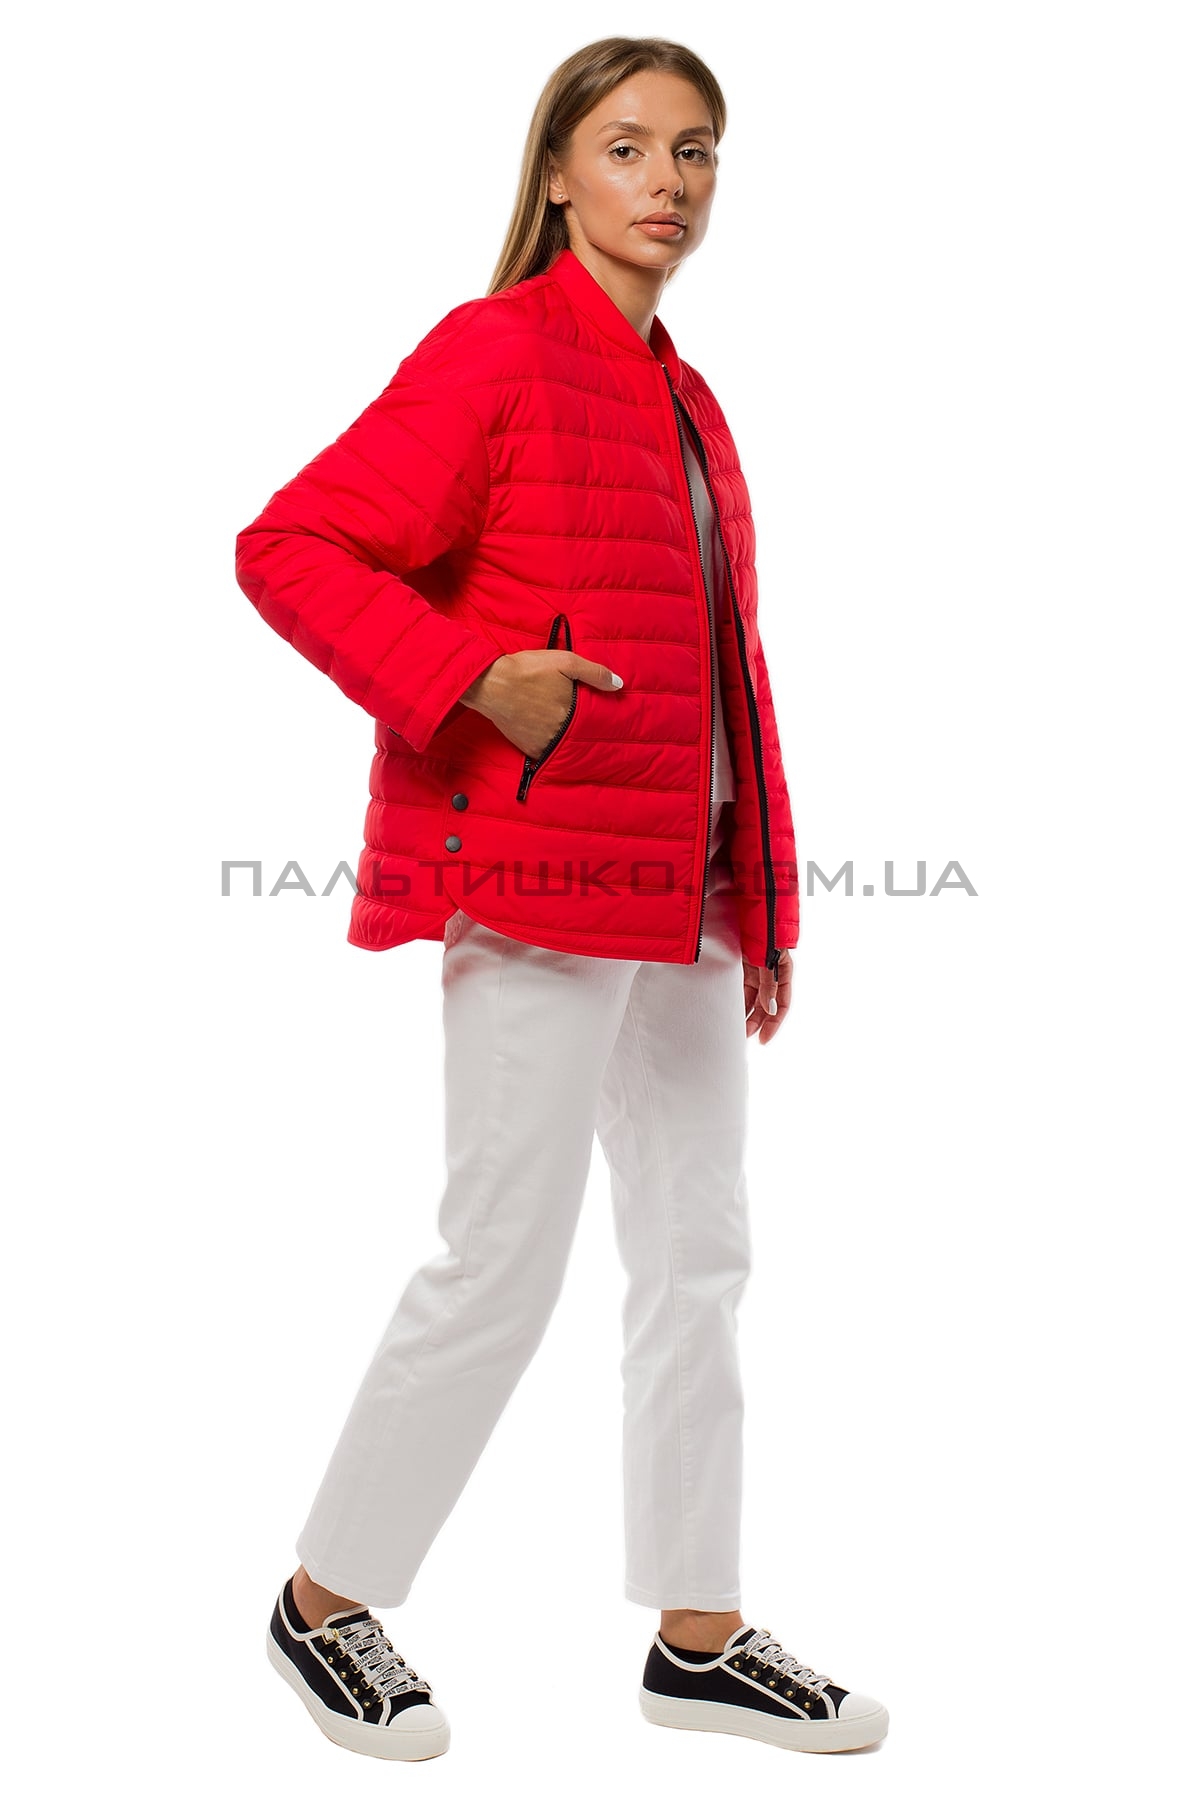  Женская куртка красная